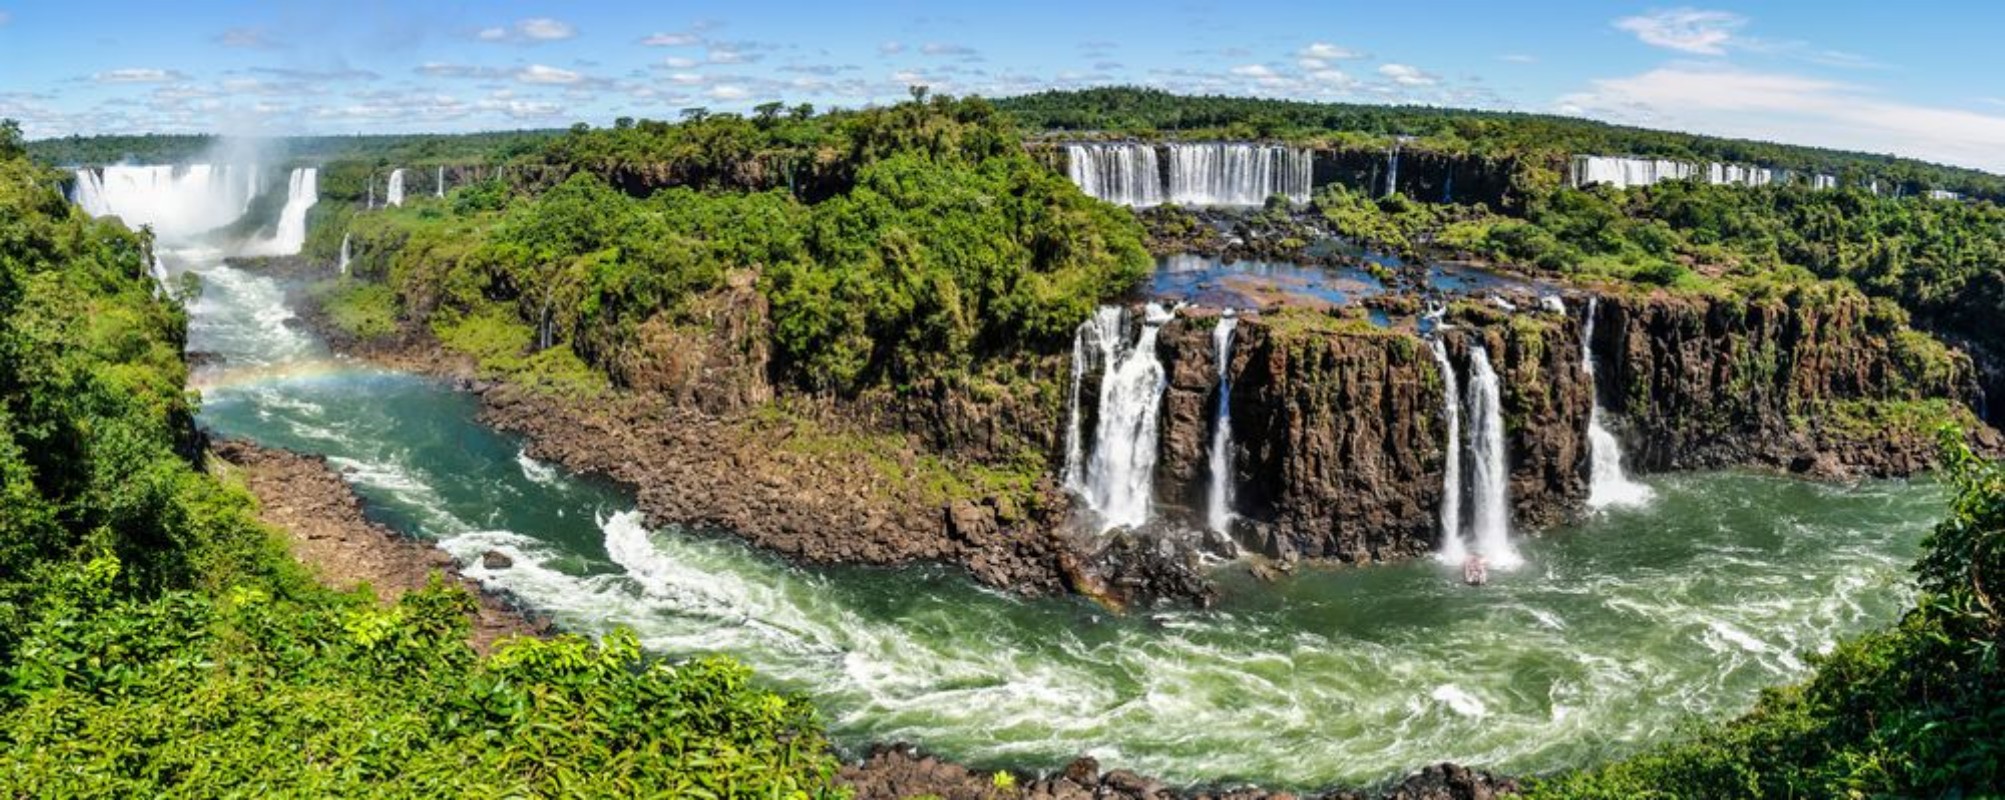 Image de Panoramic view at Iguazu Falls  Brazil